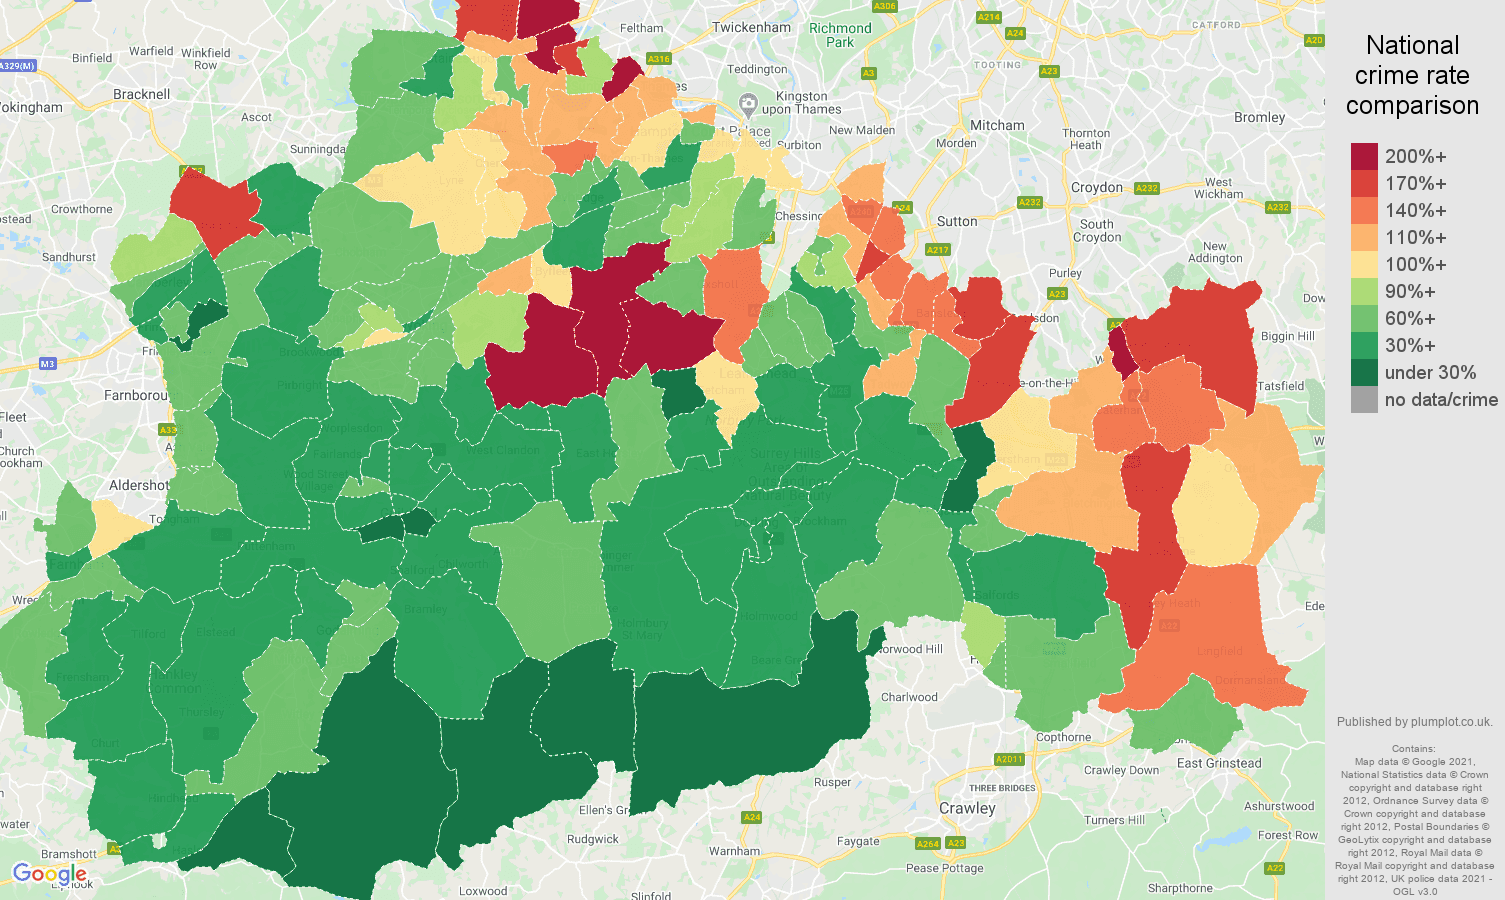 Surrey vehicle crime rate comparison map